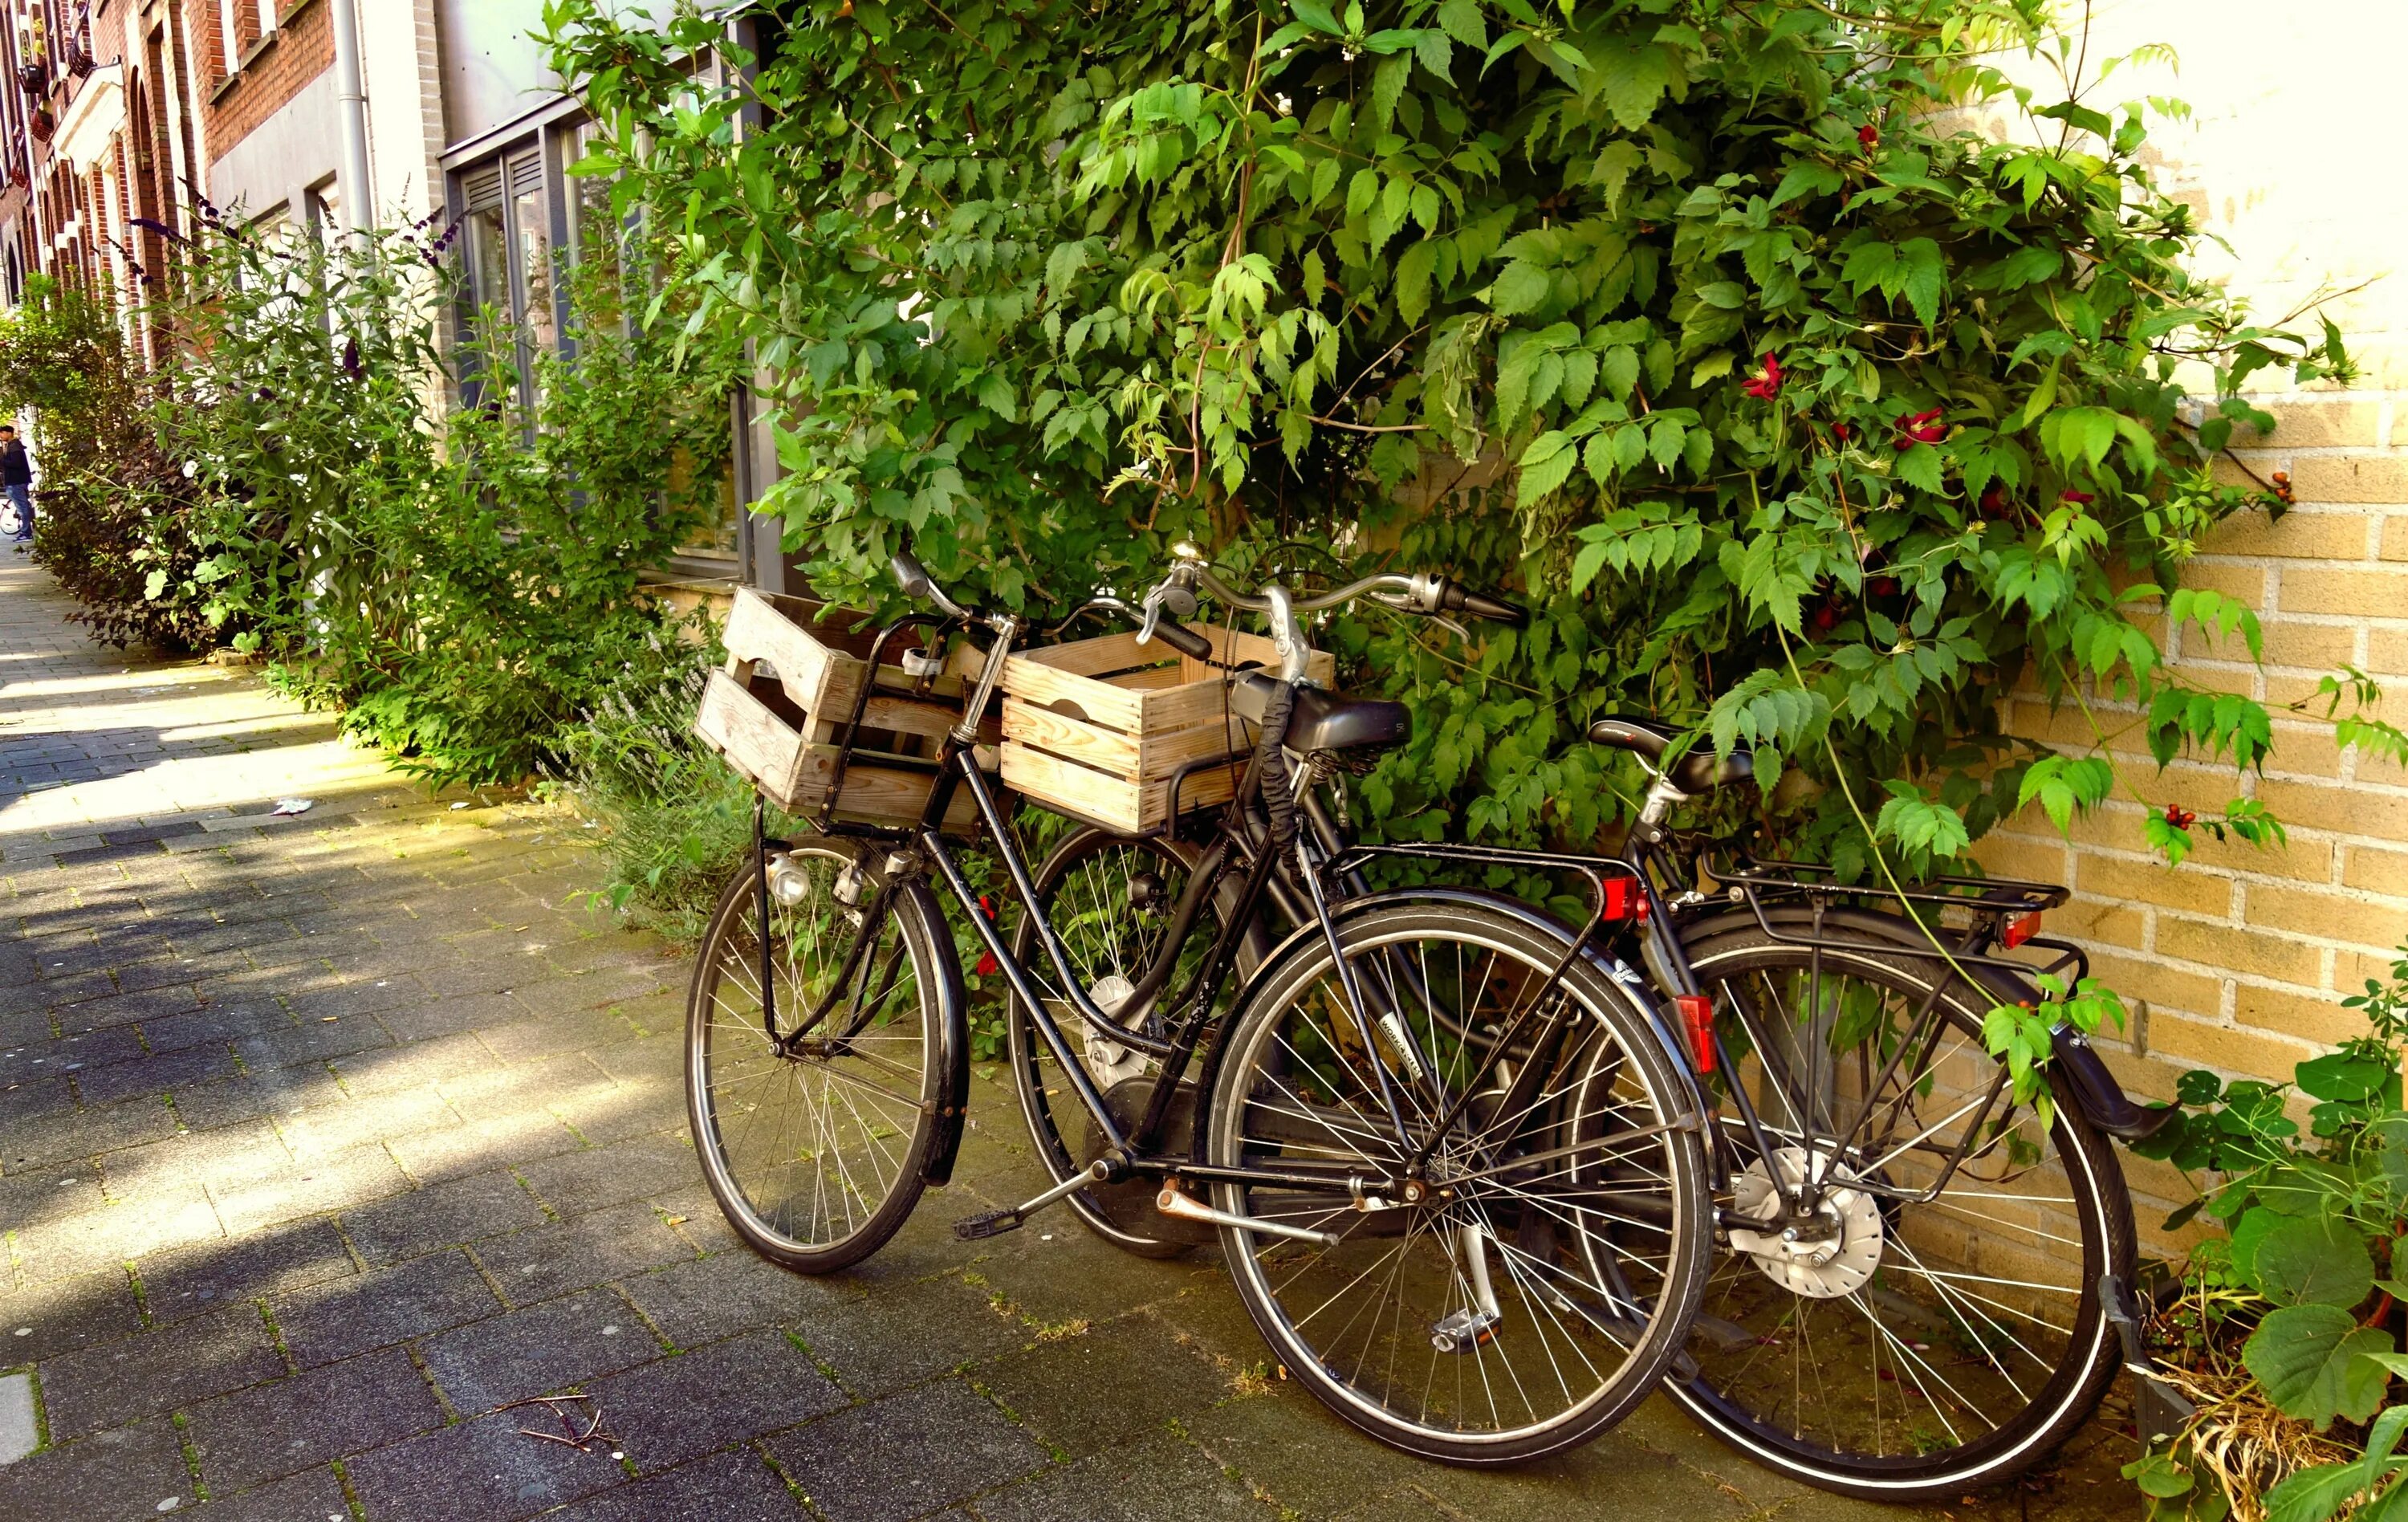 Велосипед в хорошем состояние. Старый велосипед. Велосипед на улице. Велосипед в городе. Красивый городской велосипед.